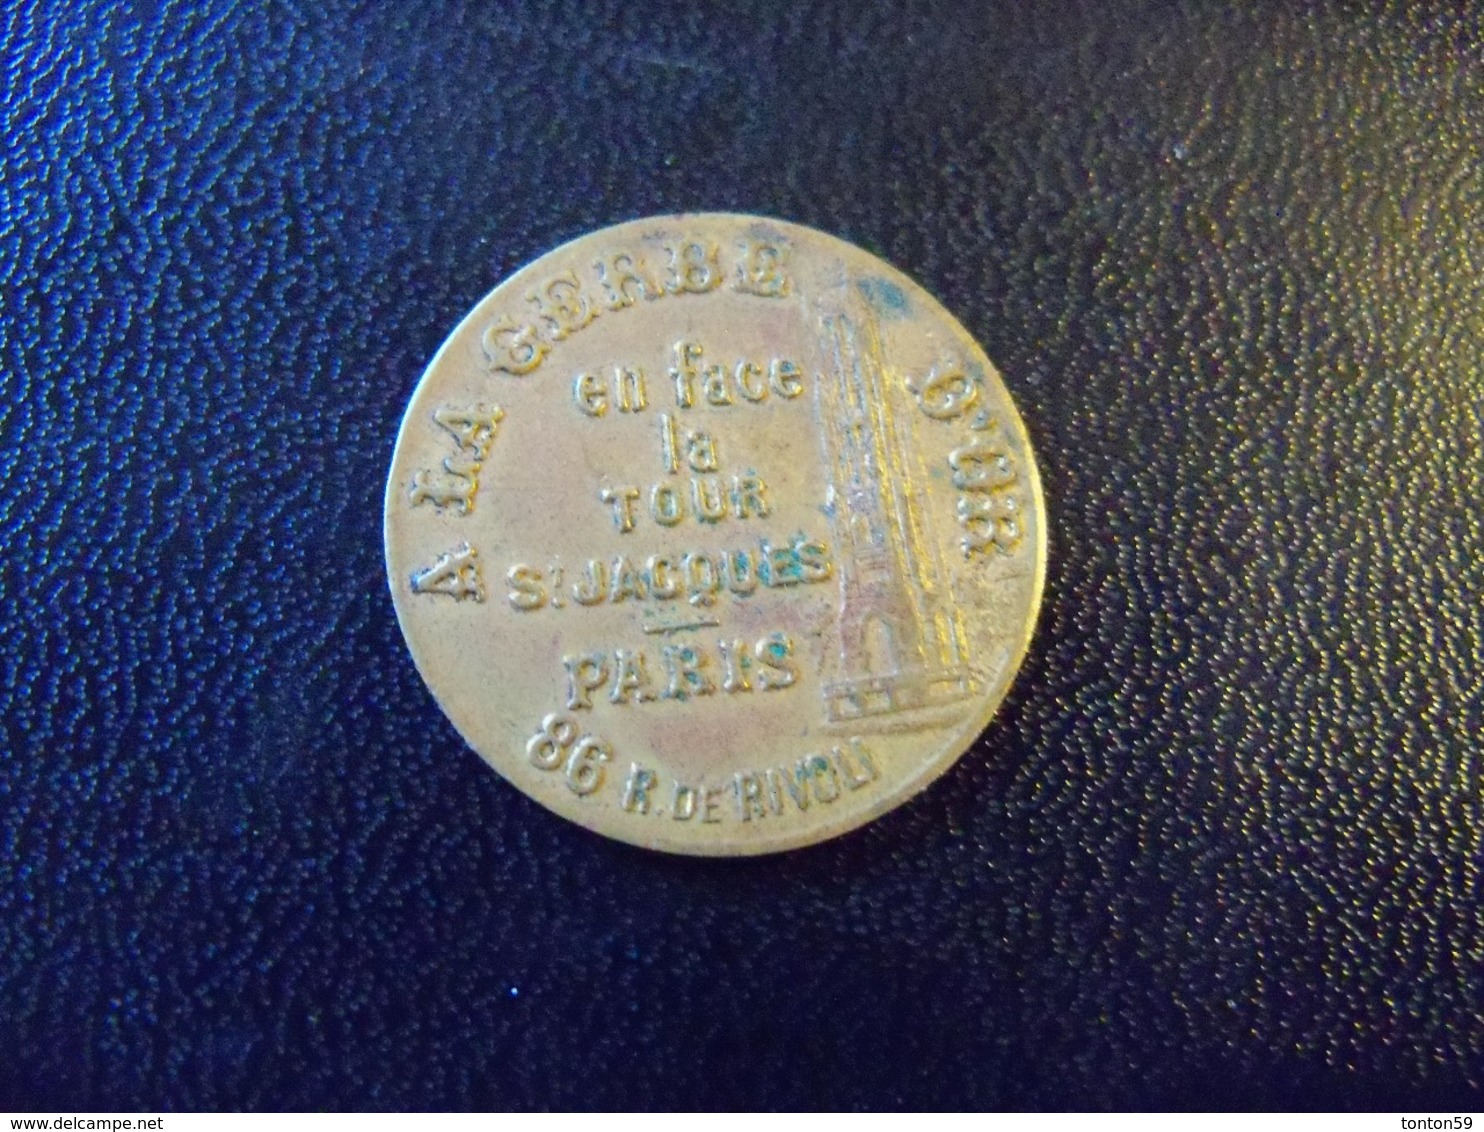 Ancienne Médaille Publicitaire "A La Gerbe D'or 86 Rue De Rivoli Paris" Orfévrerie Bijouterie Joailleries Bronzes 1797 - Professionnels / De Société